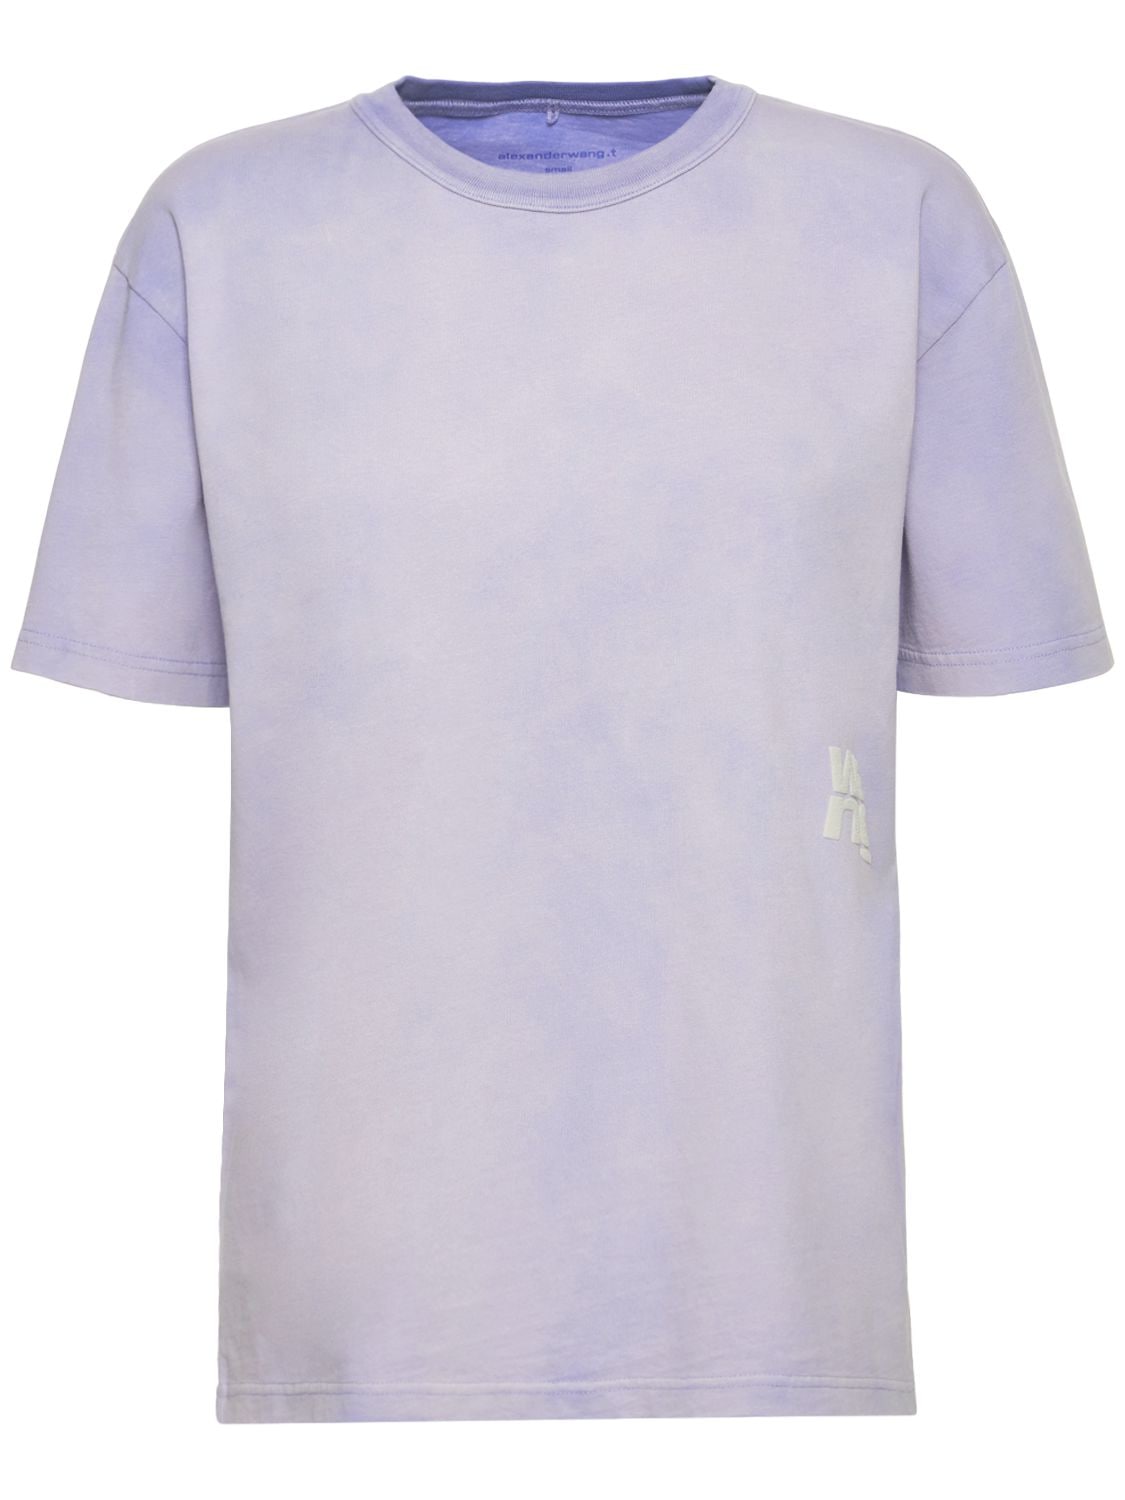 Essential Short Sleeve Cotton T-shirt - ALEXANDER WANG - Modalova